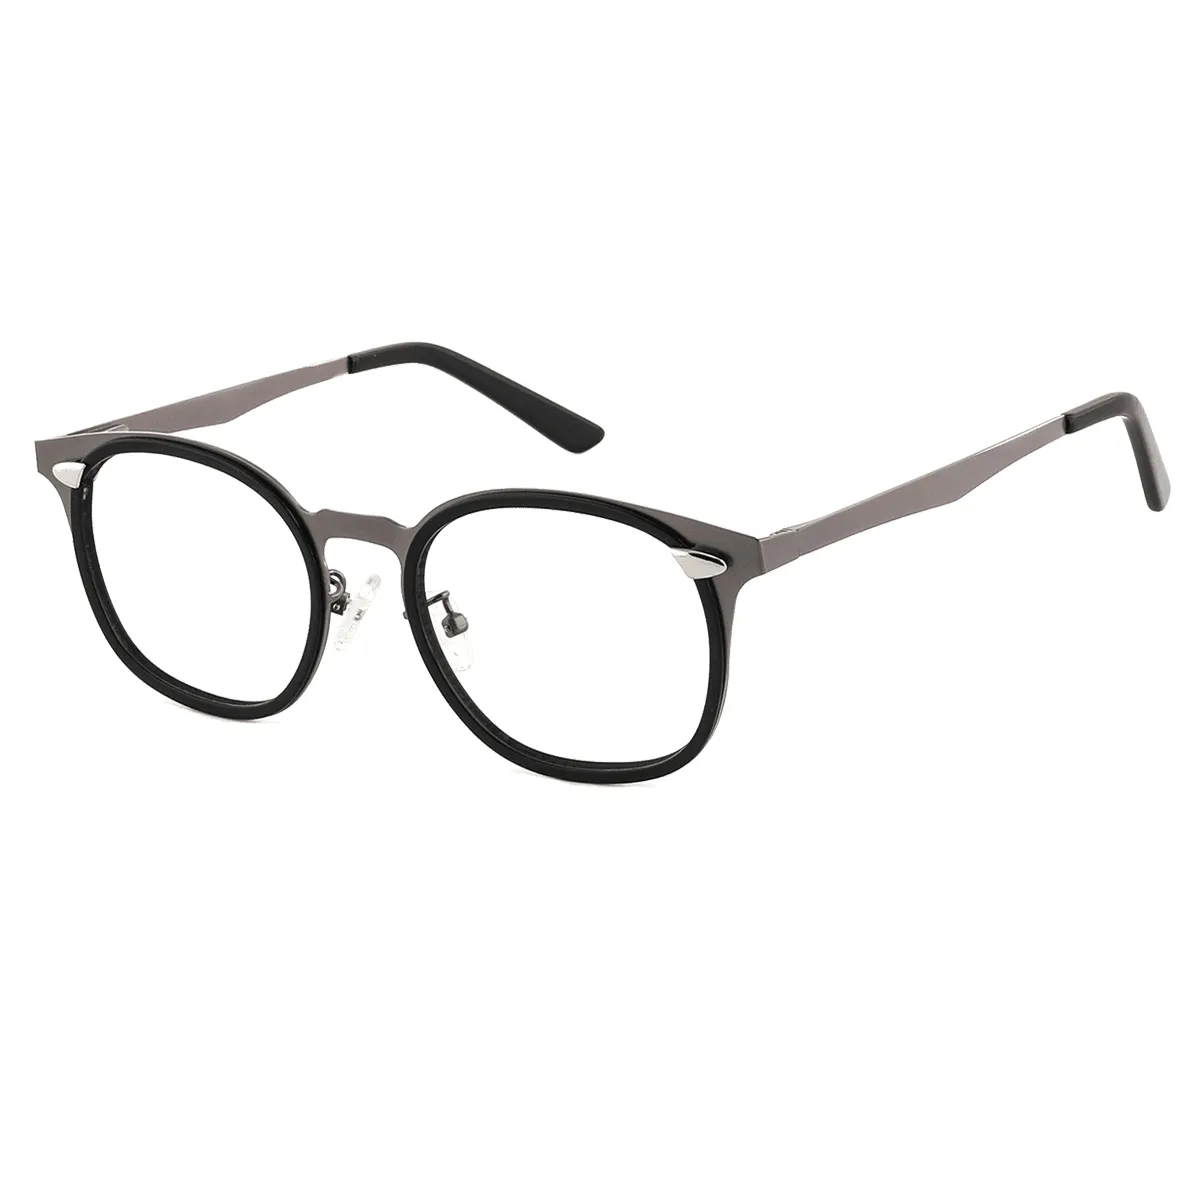 Lind - Oval Black-Gun Glasses for Men & Women